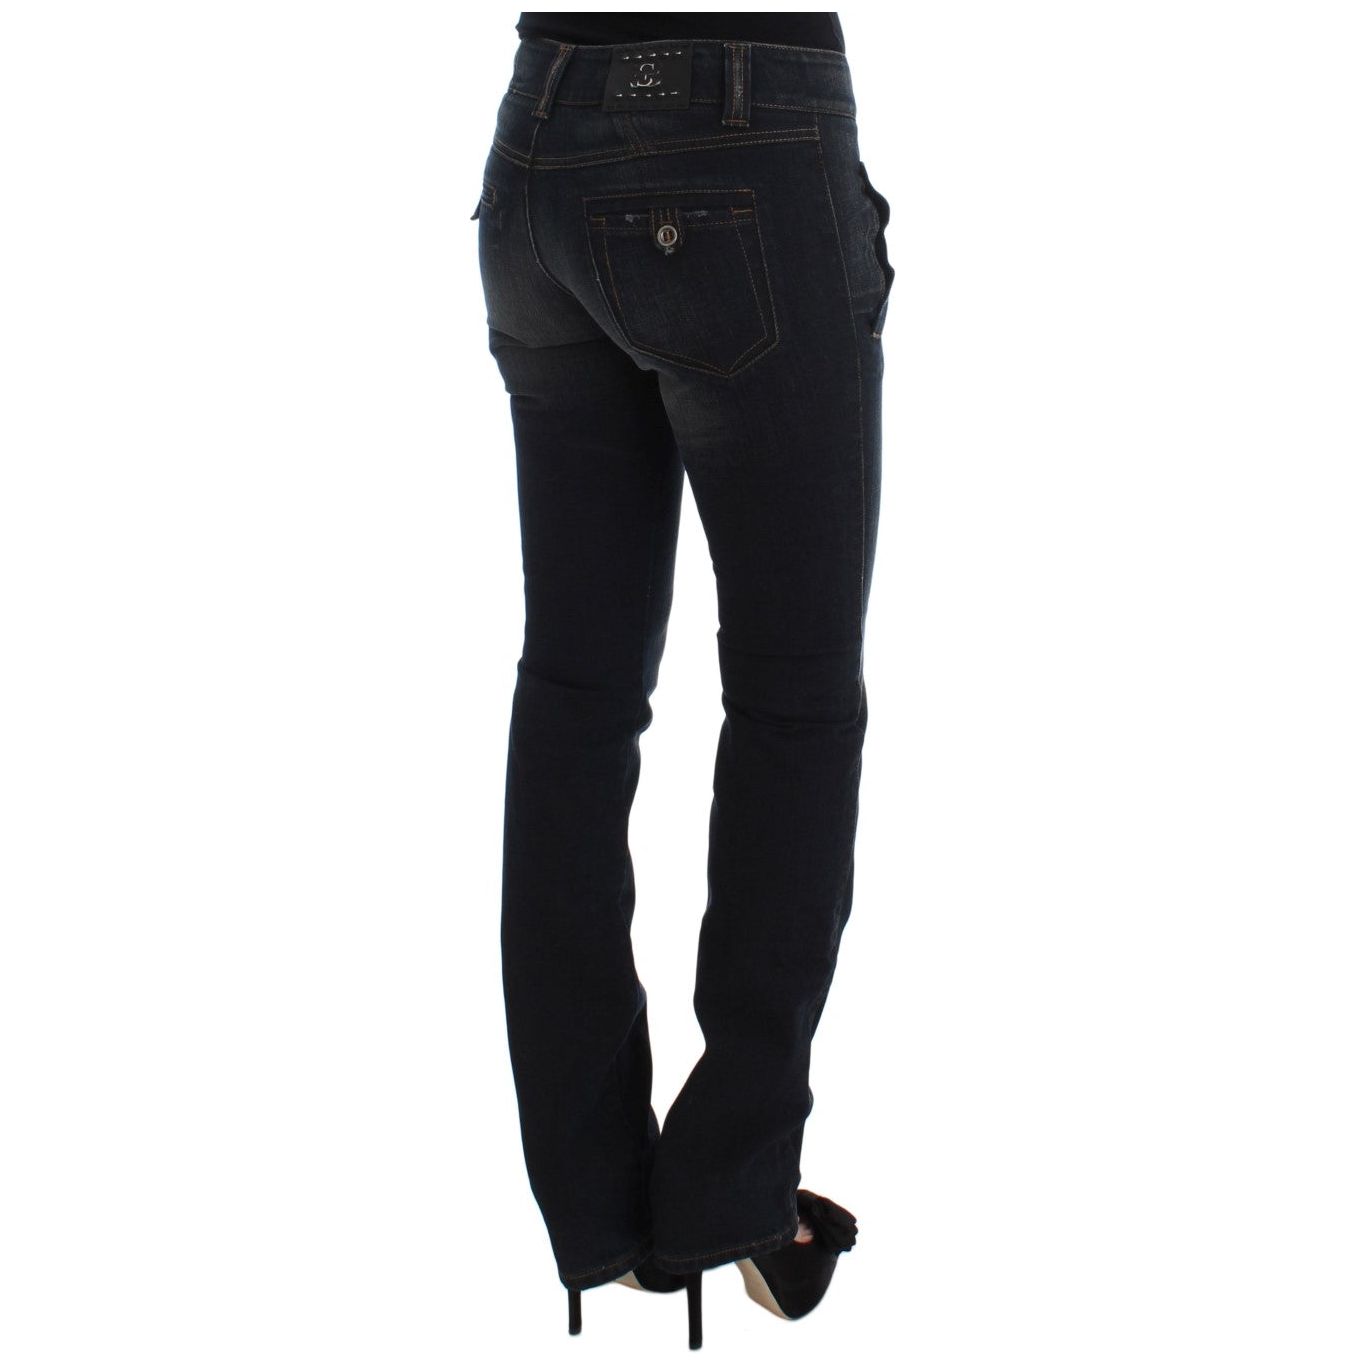 Ermanno Scervino Chic Slim Fit Italian Cotton Jeans blue-wash-cotton-slim-fit-jeans 318990-blue-wash-cotton-slim-fit-jeans-3.jpg